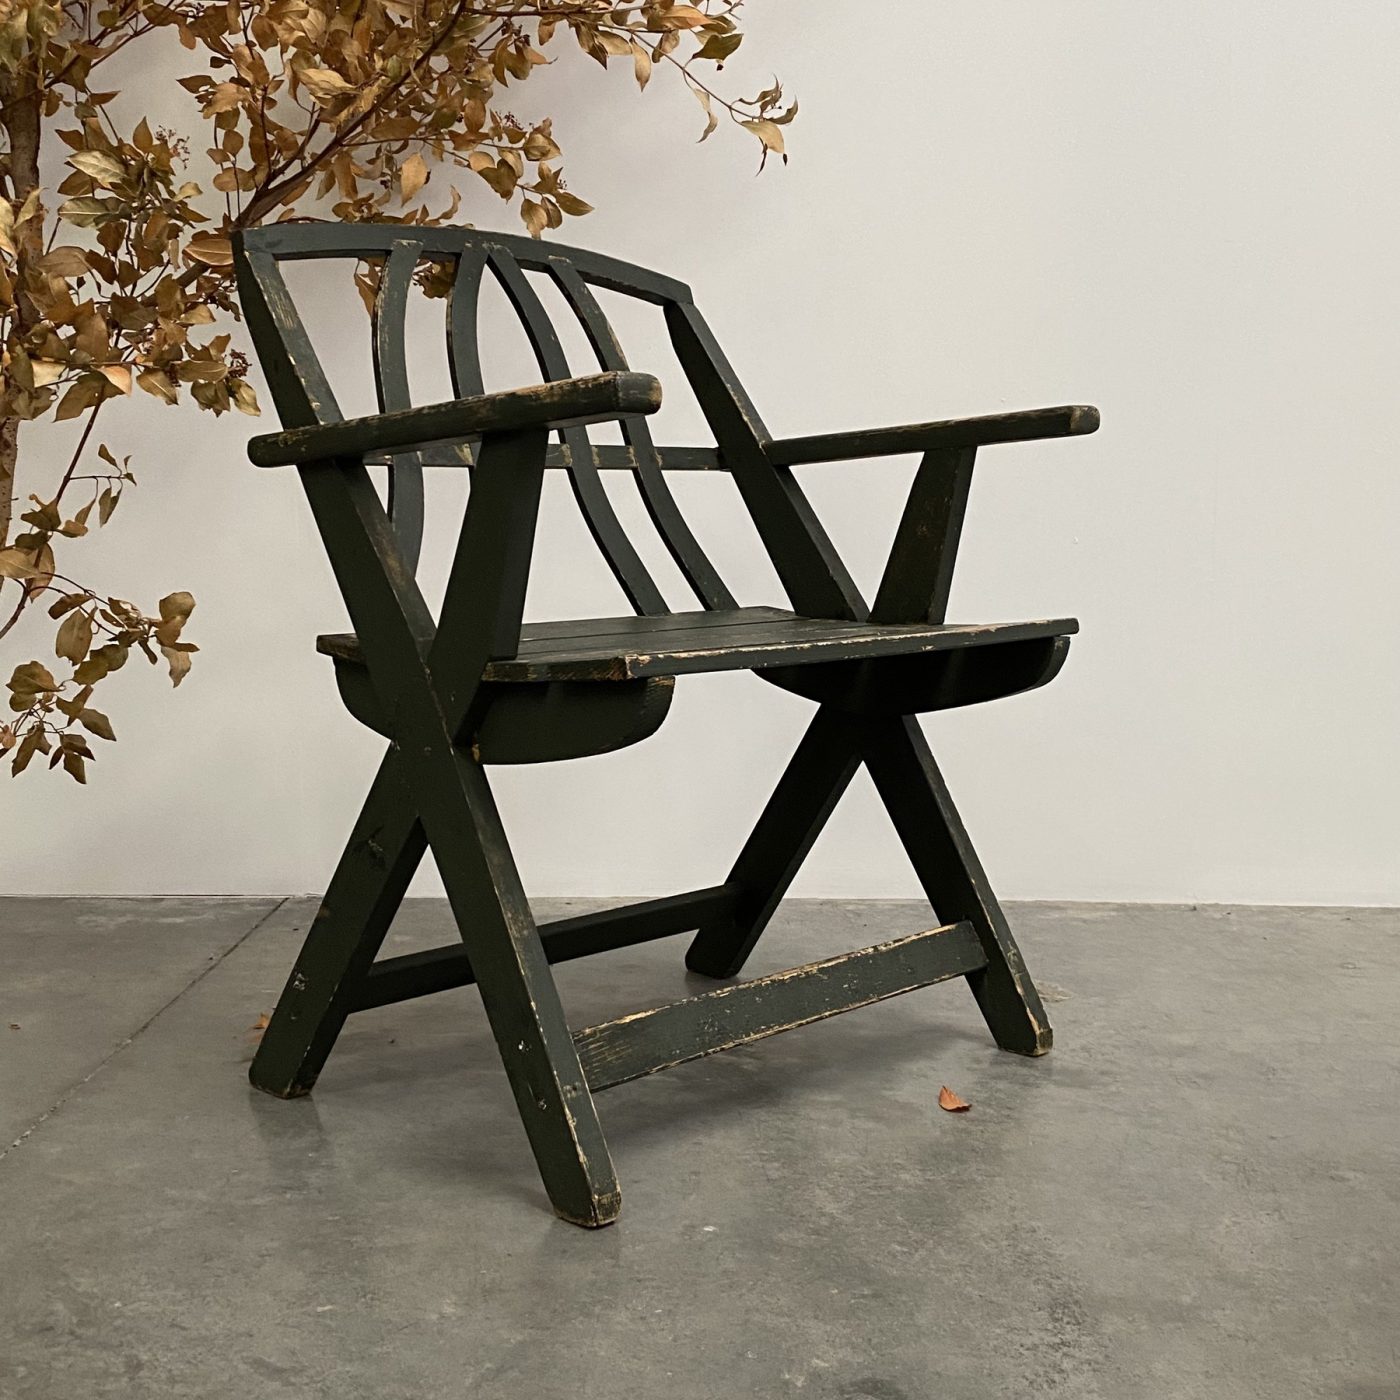 objet-vagabond-wooden-chairs0006